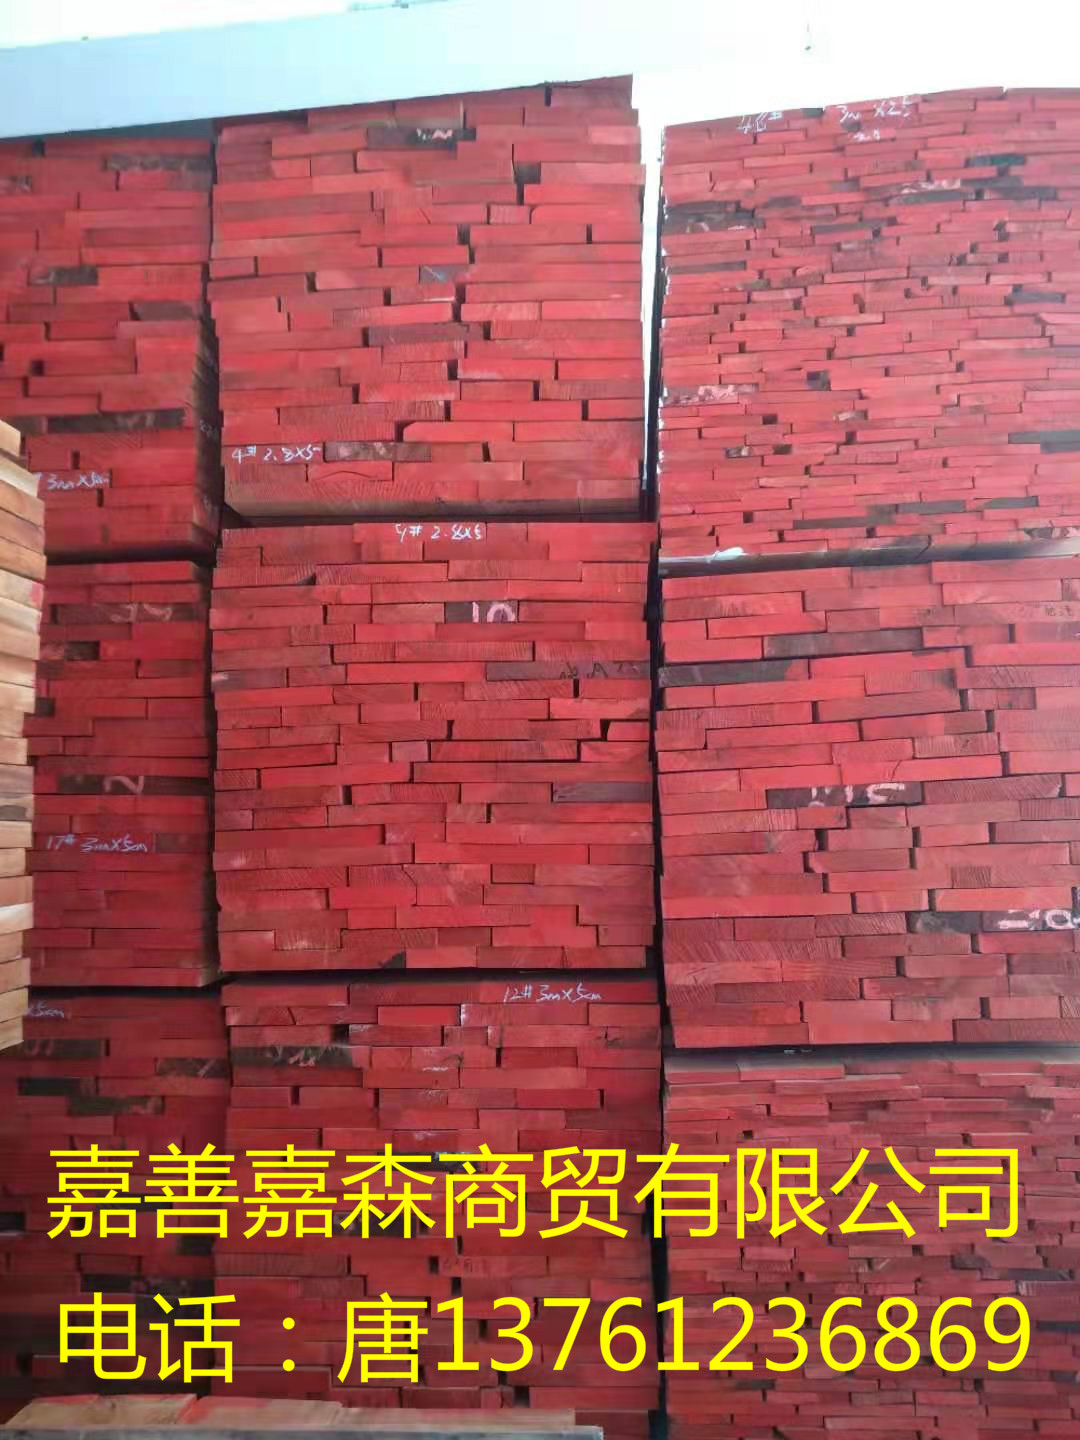 无节东南亚桃花芯厂家直销 低价出售优质椴木板材图片